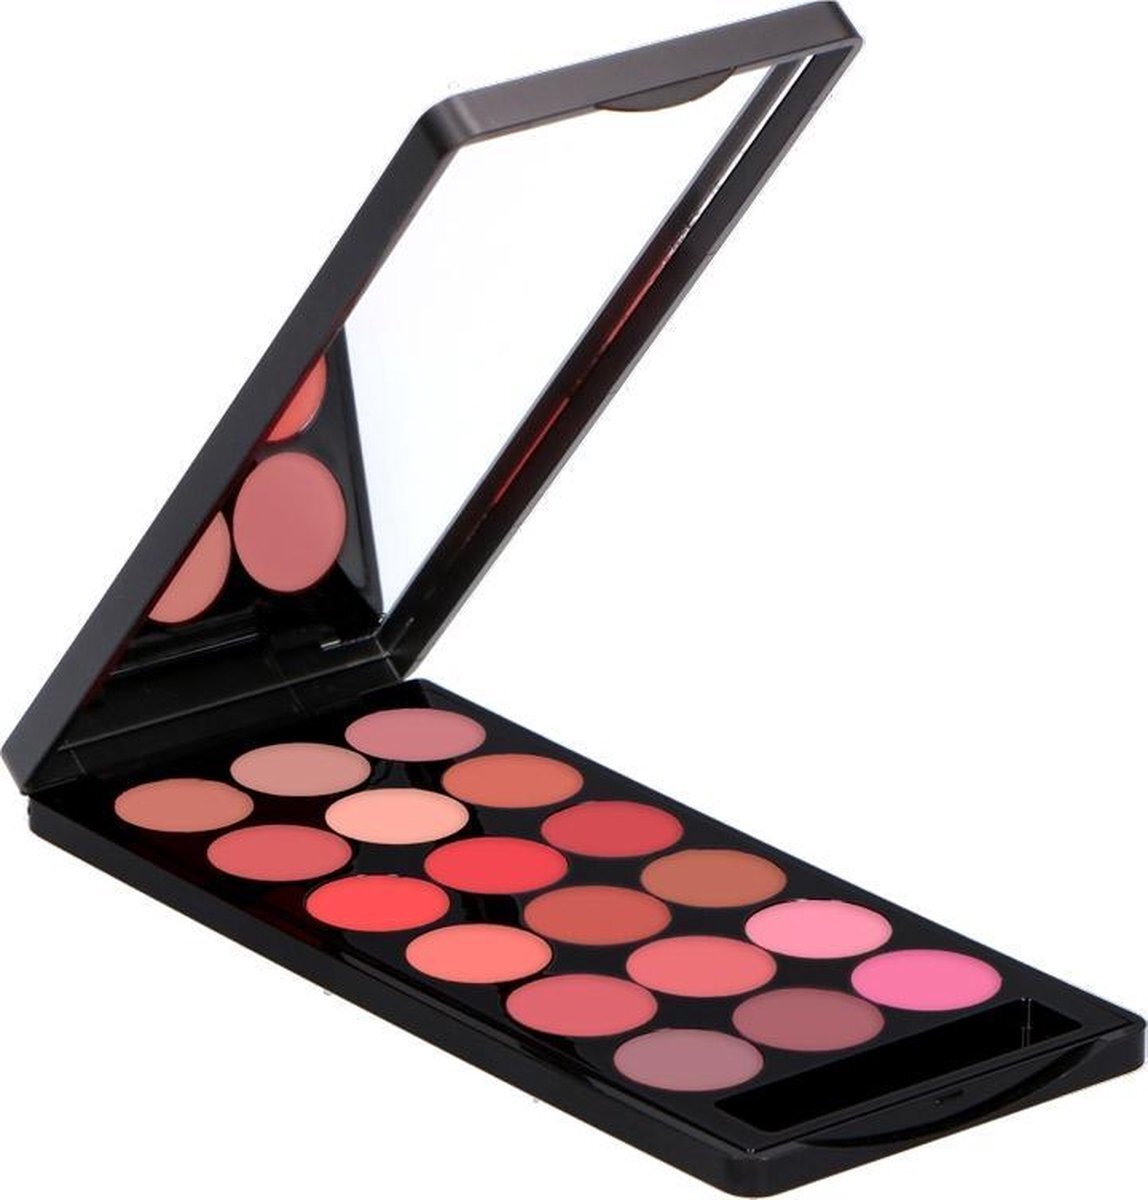 Make-up Studio Lipcolourbox met 18 kleuren lippenstift - 5